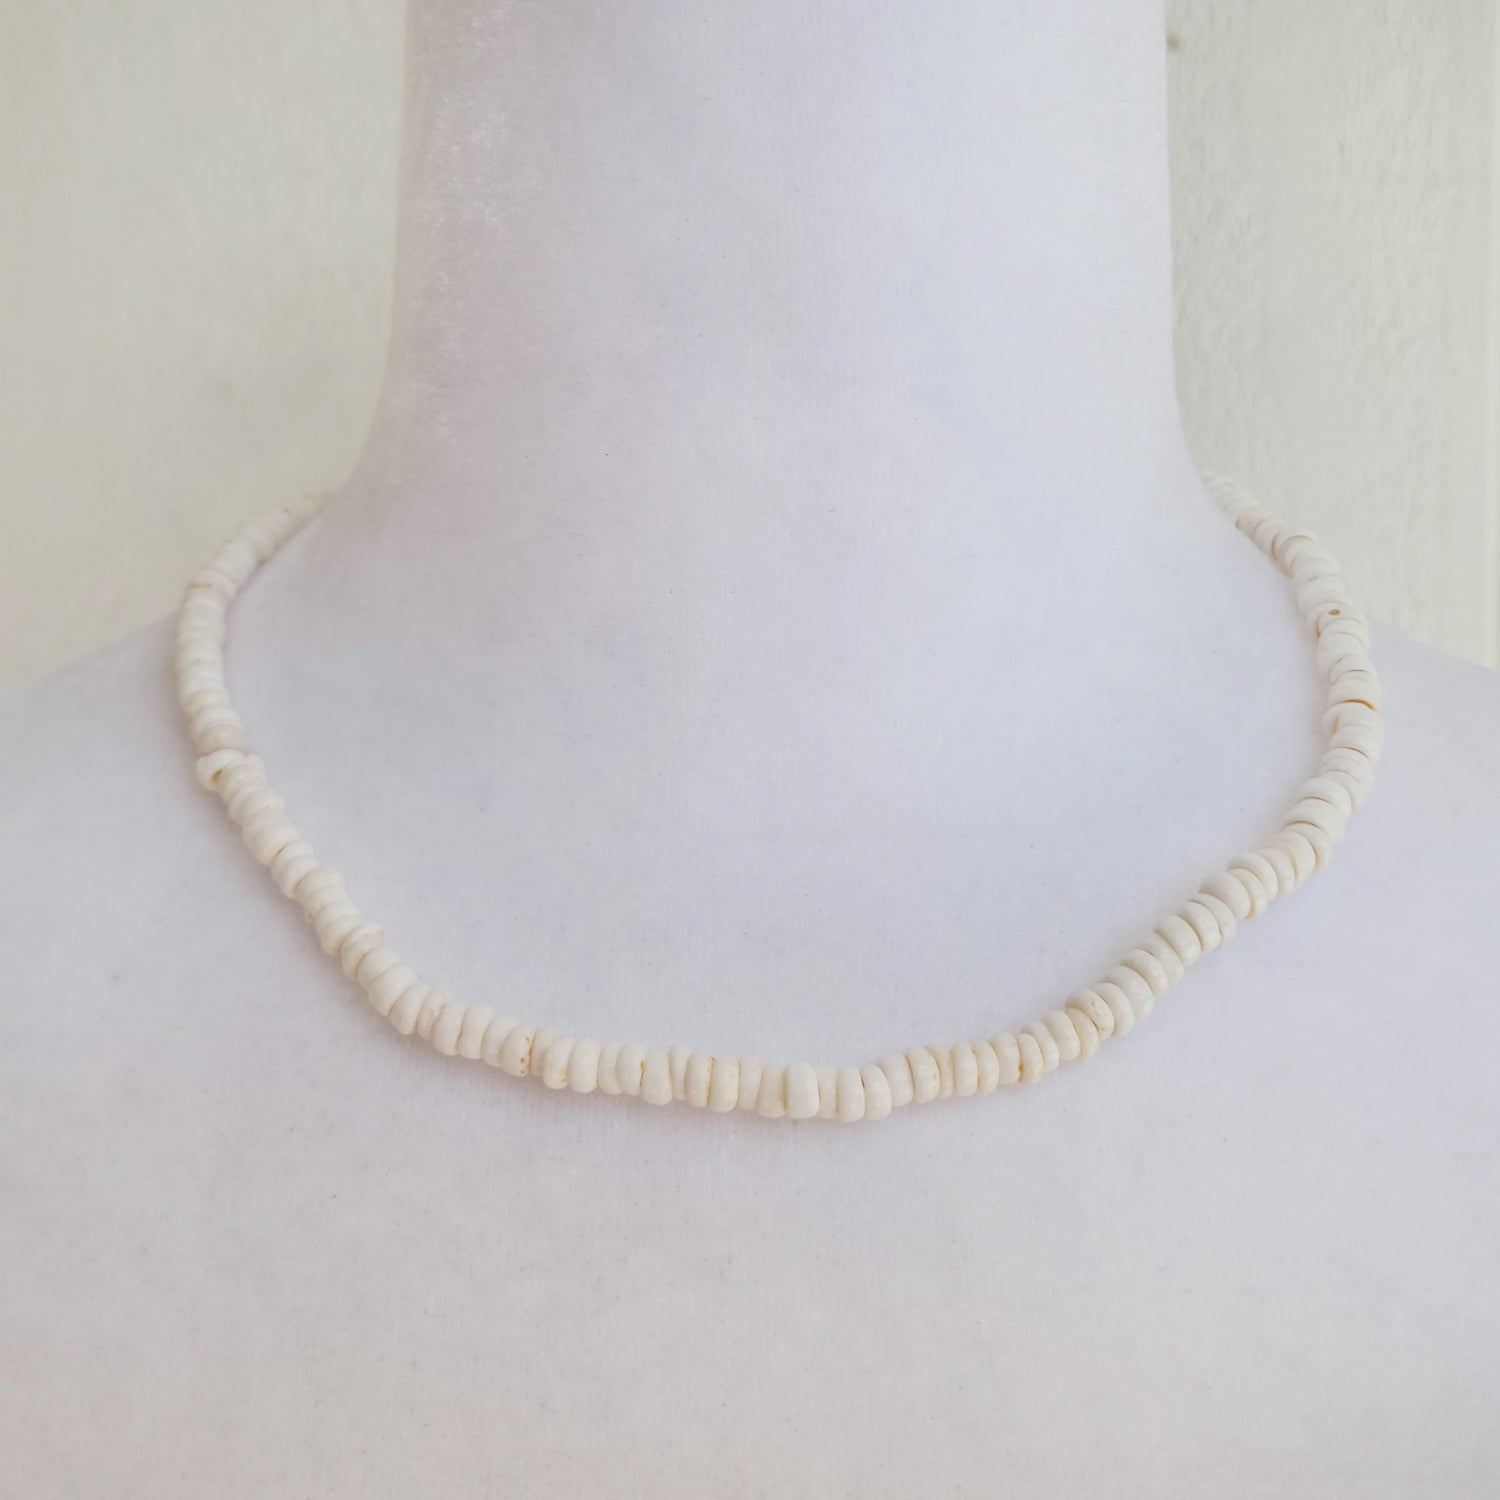 Puka Shell Necklace – Things Hawaiian